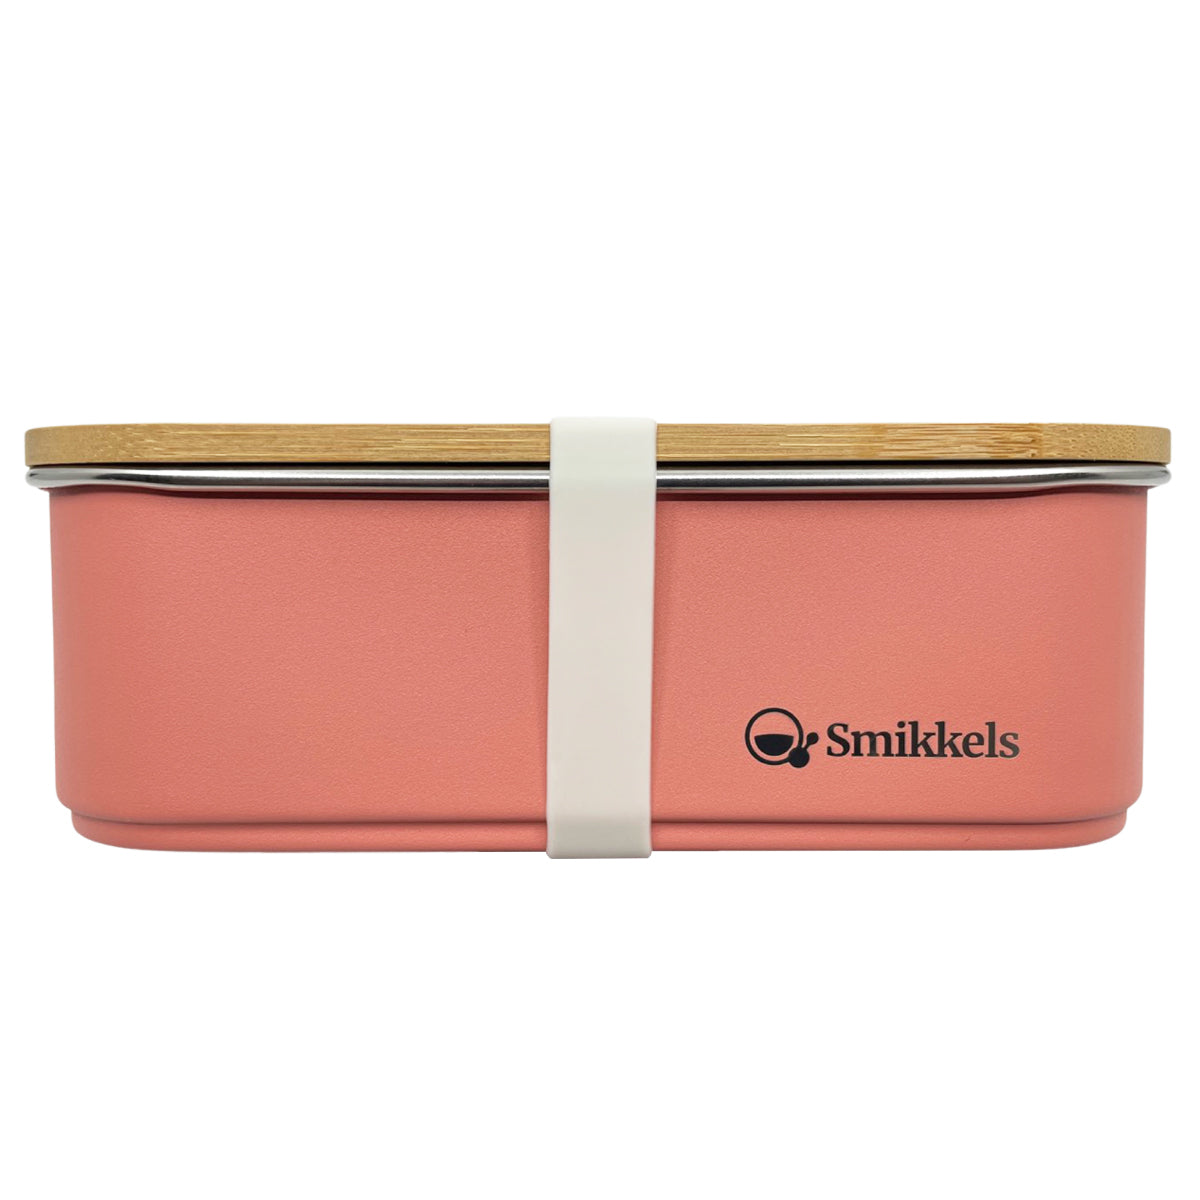 Smikkels Smikkels Lunchbox aus Edelstahl